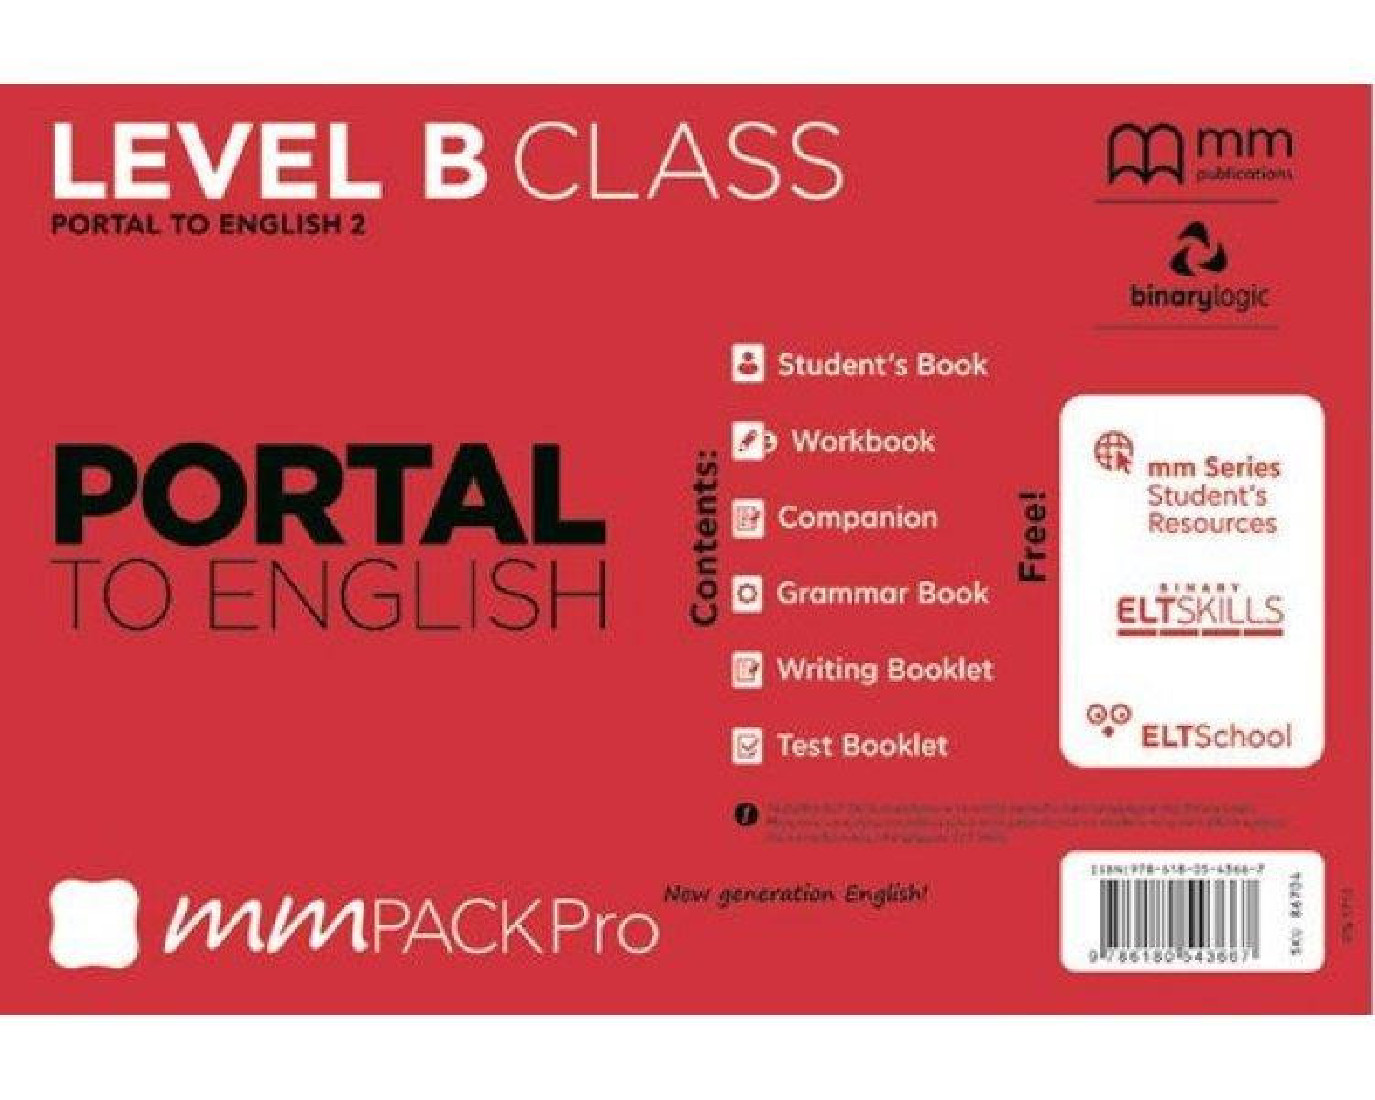 MM PACK PRO PORTAL B CLASS